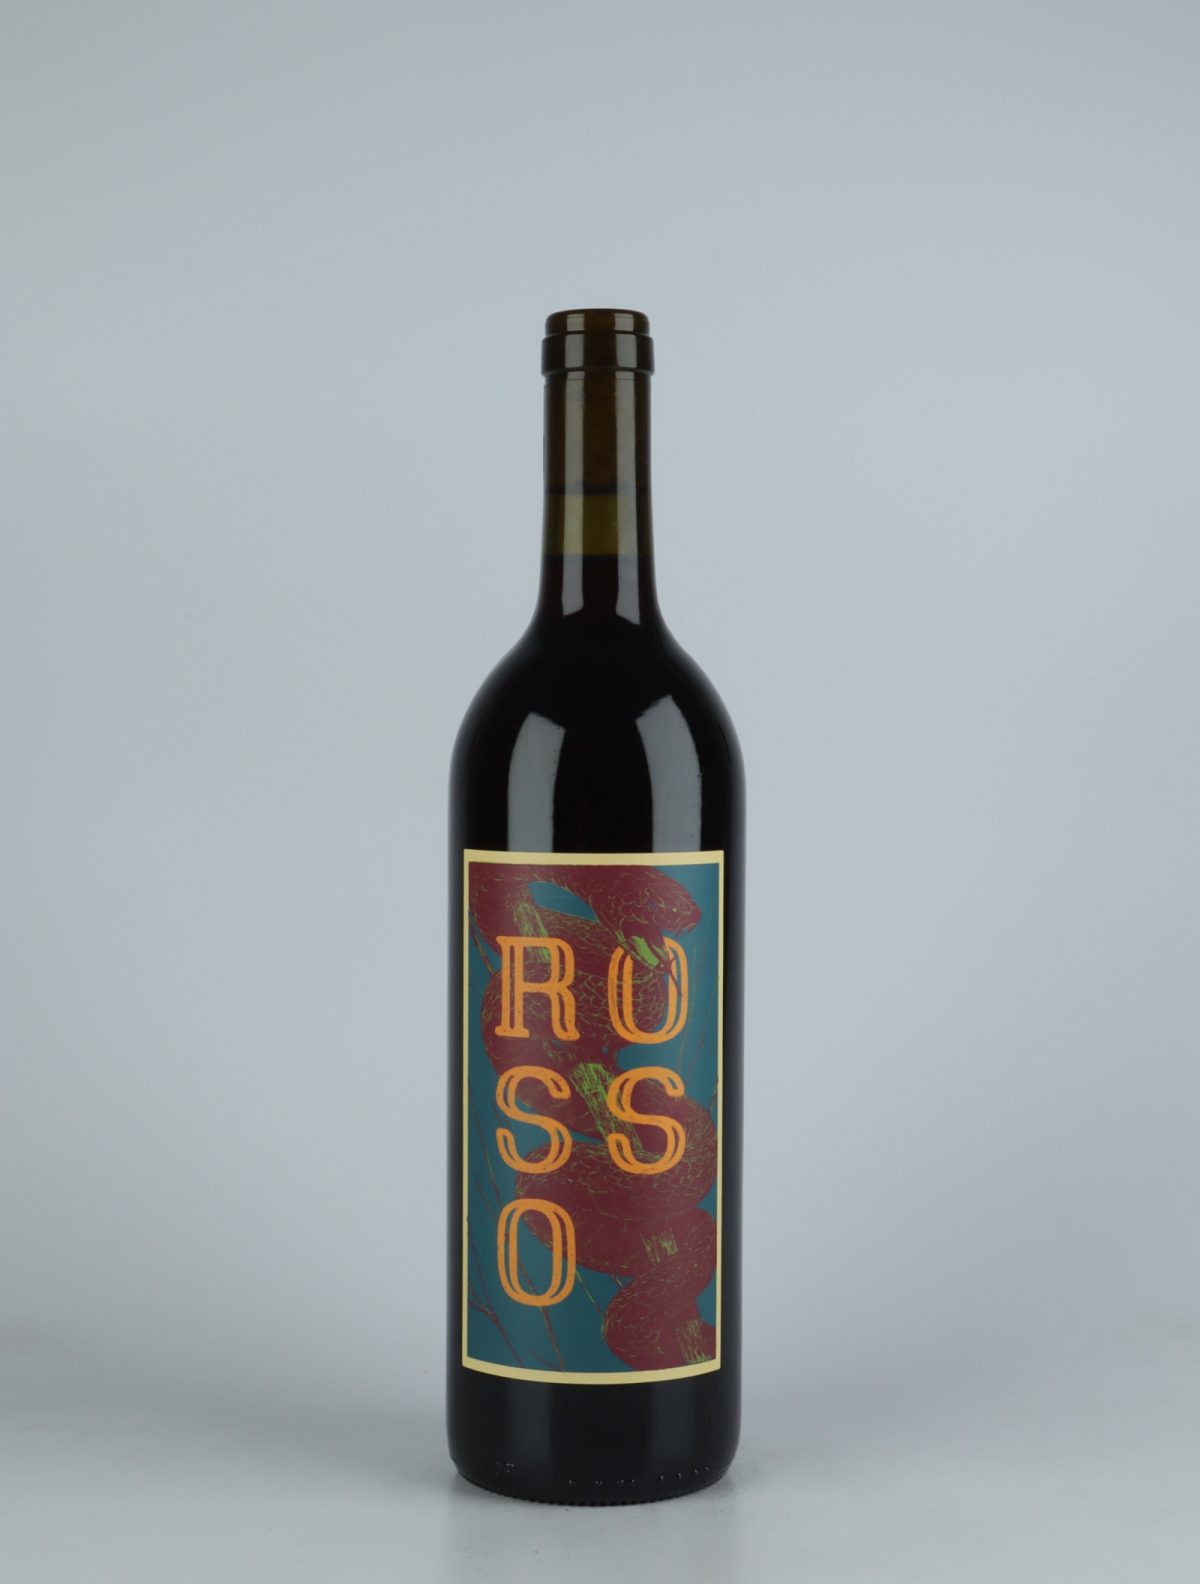 A bottle 2020 Rosso Red wine from Momento Mori, Victoria in Australia